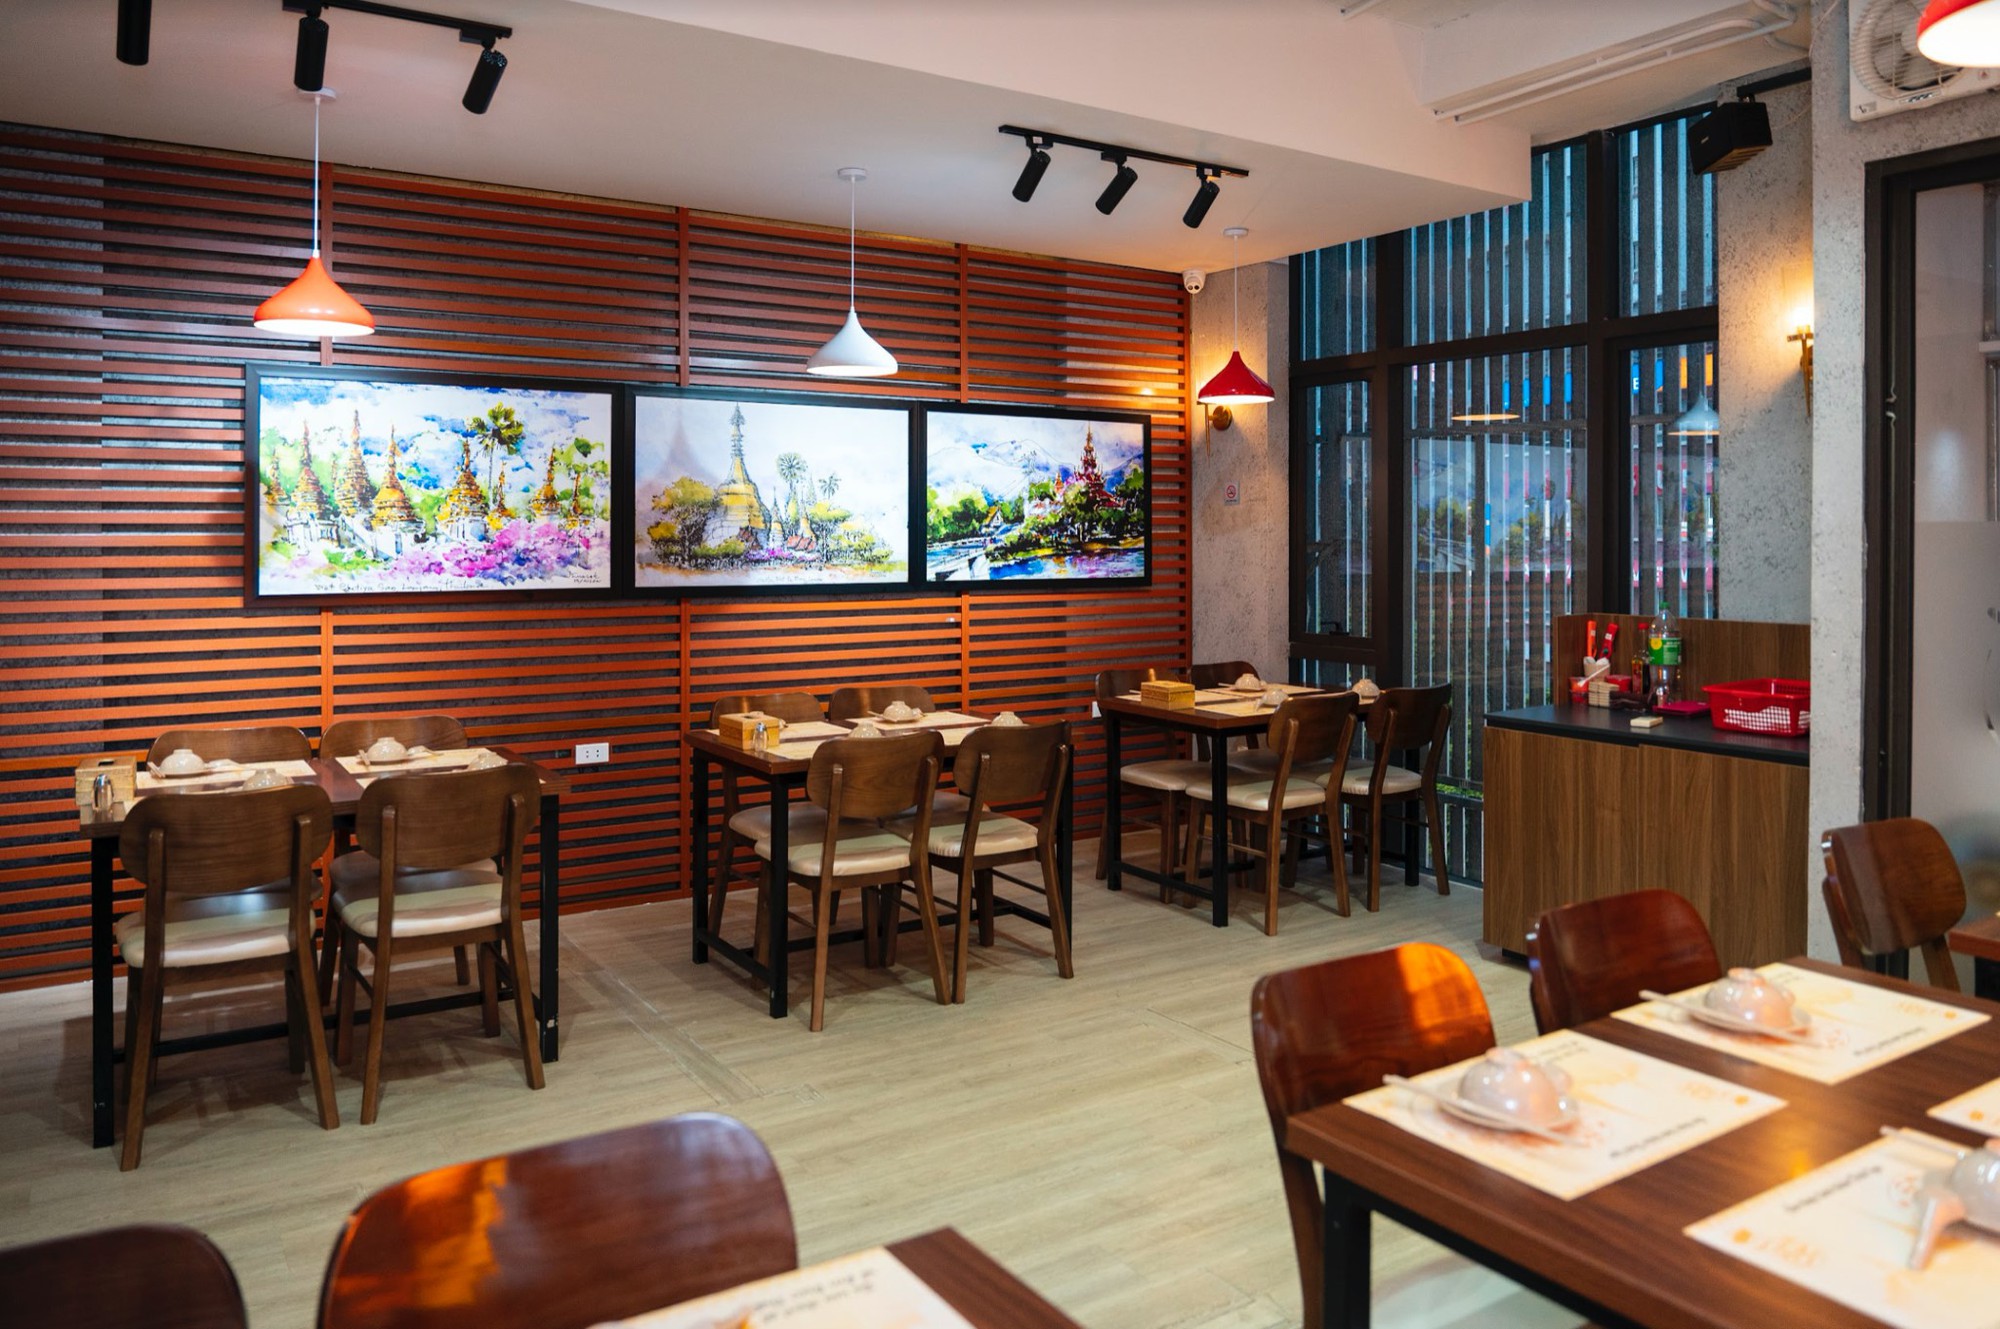 TSF - Nhà hàng Thai Street Food: Thêm nhiều món ăn hấp dẫn cùng không gian chụp ảnh cực chất - ảnh 2